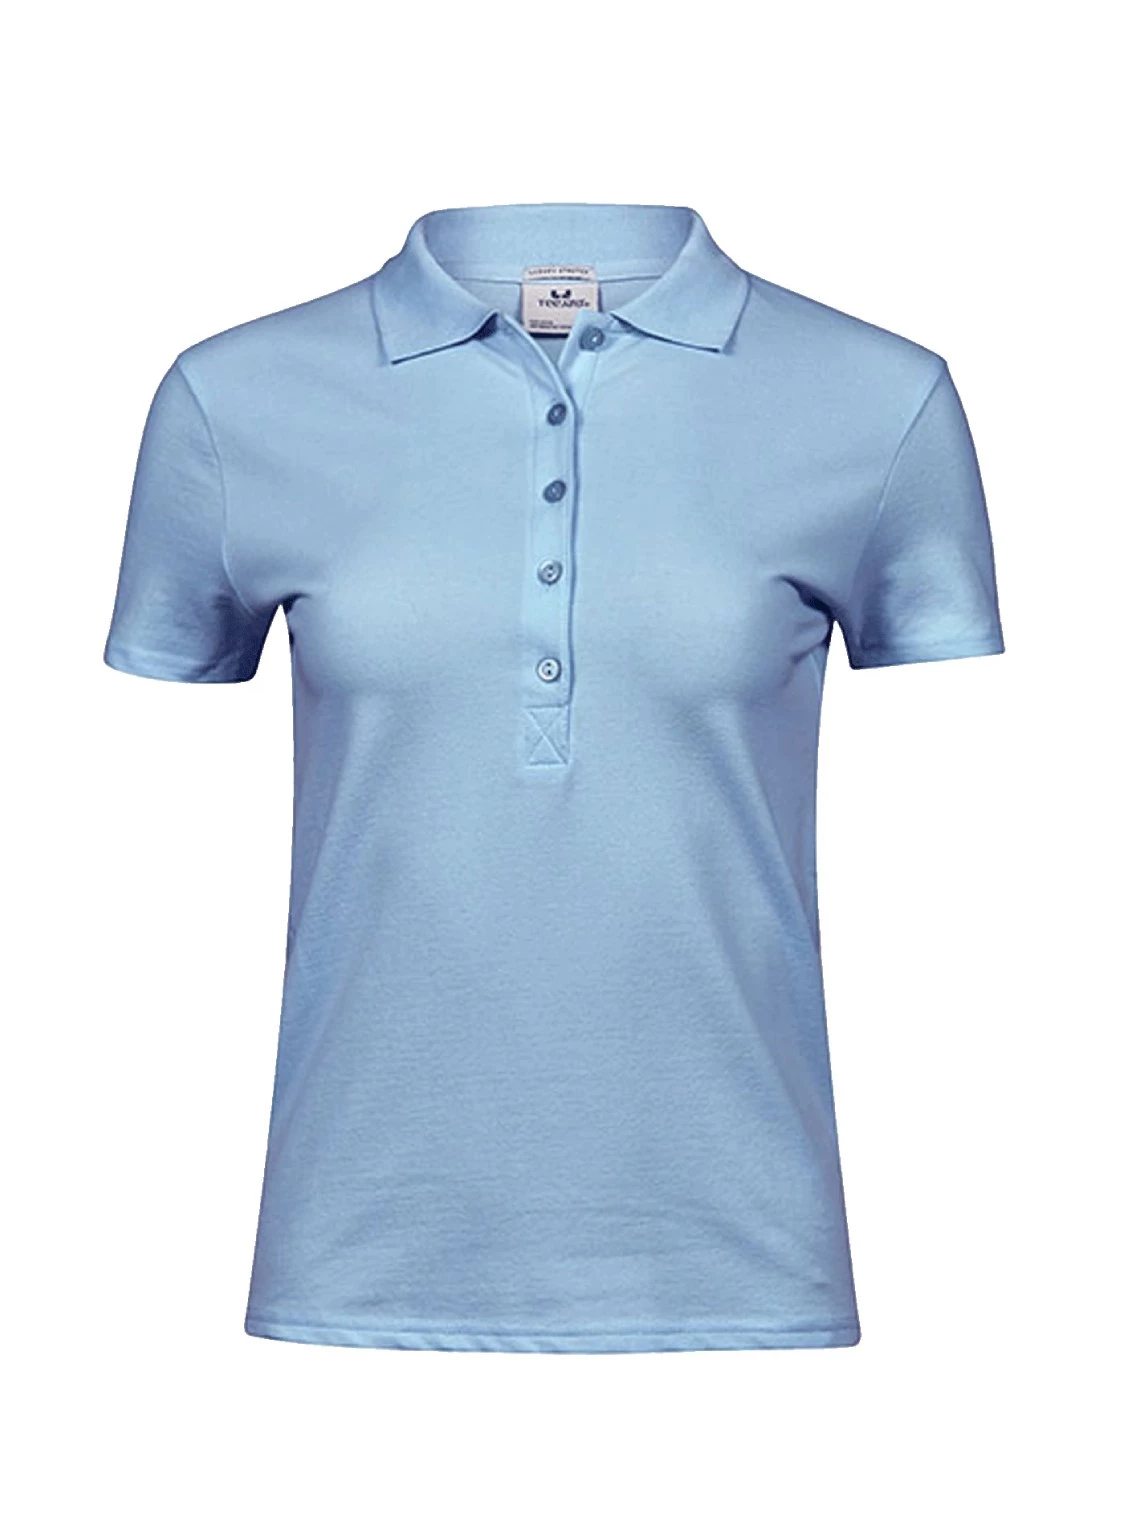 Women’s polo shirt printed Luzury TJ145 Tee Jays